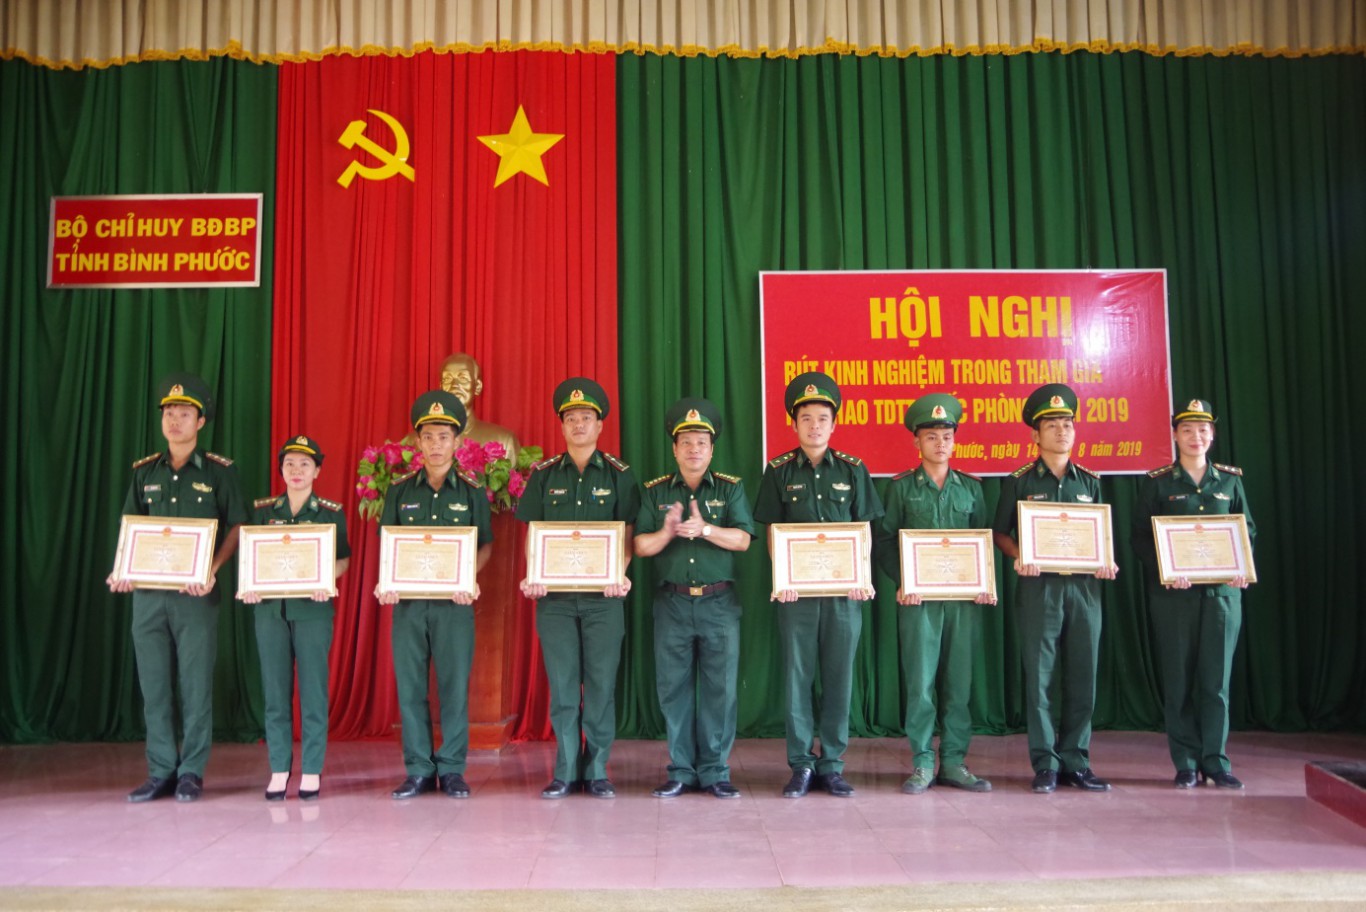 Đại tá Lê Đa Tịnh, Phó Chỉ huy trưởng Tham mưu tác chiến trao giấy khen cho các vận động viên đạt thành tích xuất sắc tại Hội thao TDTT Quốc phòng năm 2019 khu vực phía Nam